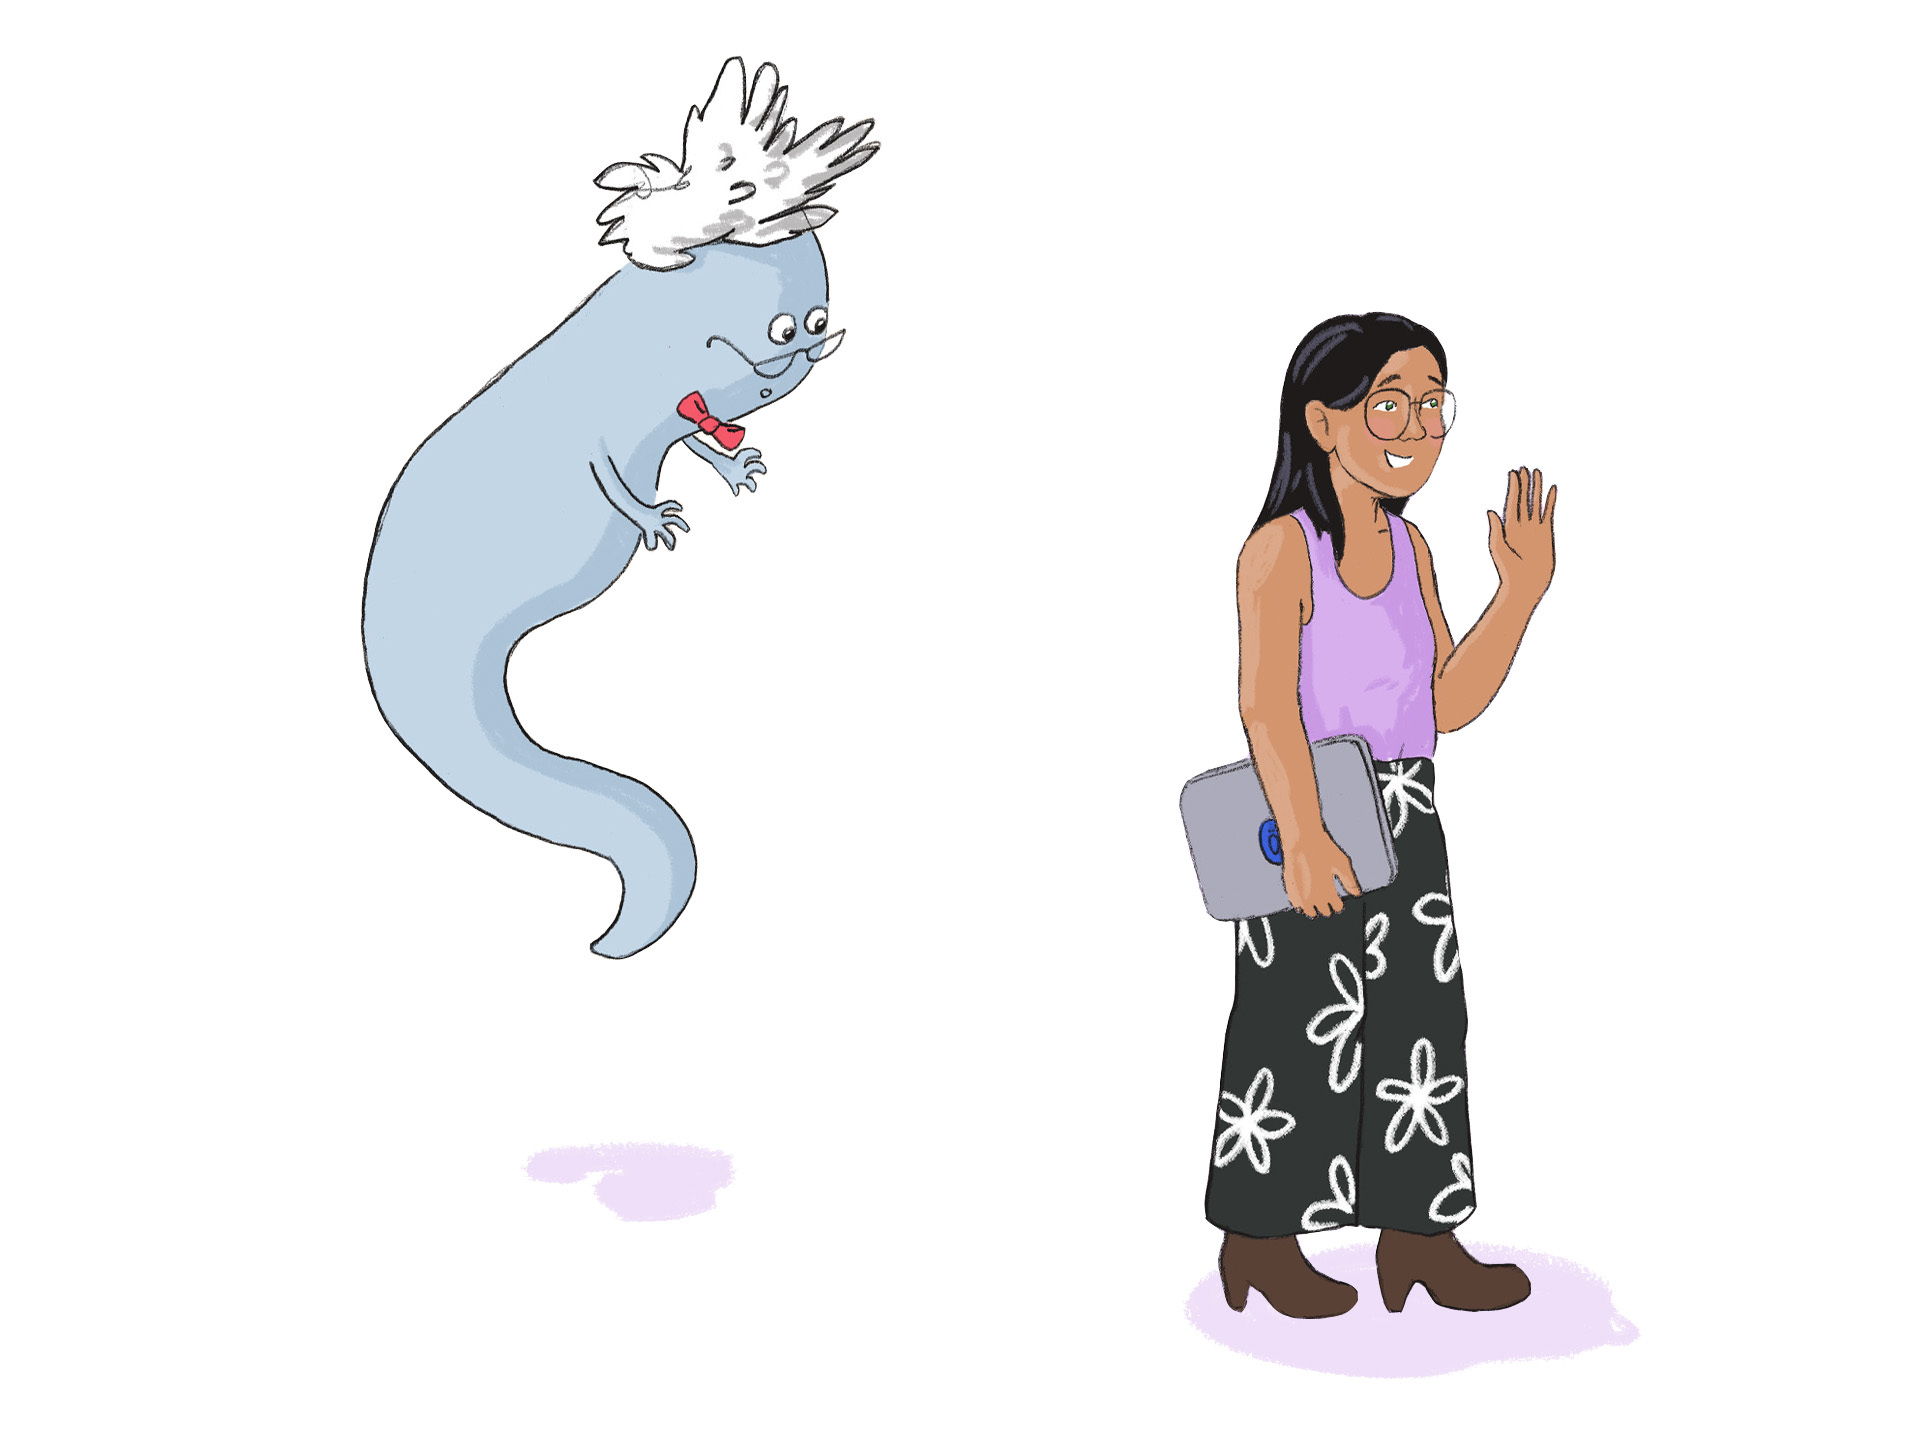 Ausschnitt aus dem Science Comic "Die Entdeckung der Filterblase" - ein Science Comic für Kinder im Alter von 10-14 Jahren zum Thema Social Media, Algorithmen und Fake News. Abgebildet ist eine freie Illustration von zwei Characterdesigns aus dem Comic.